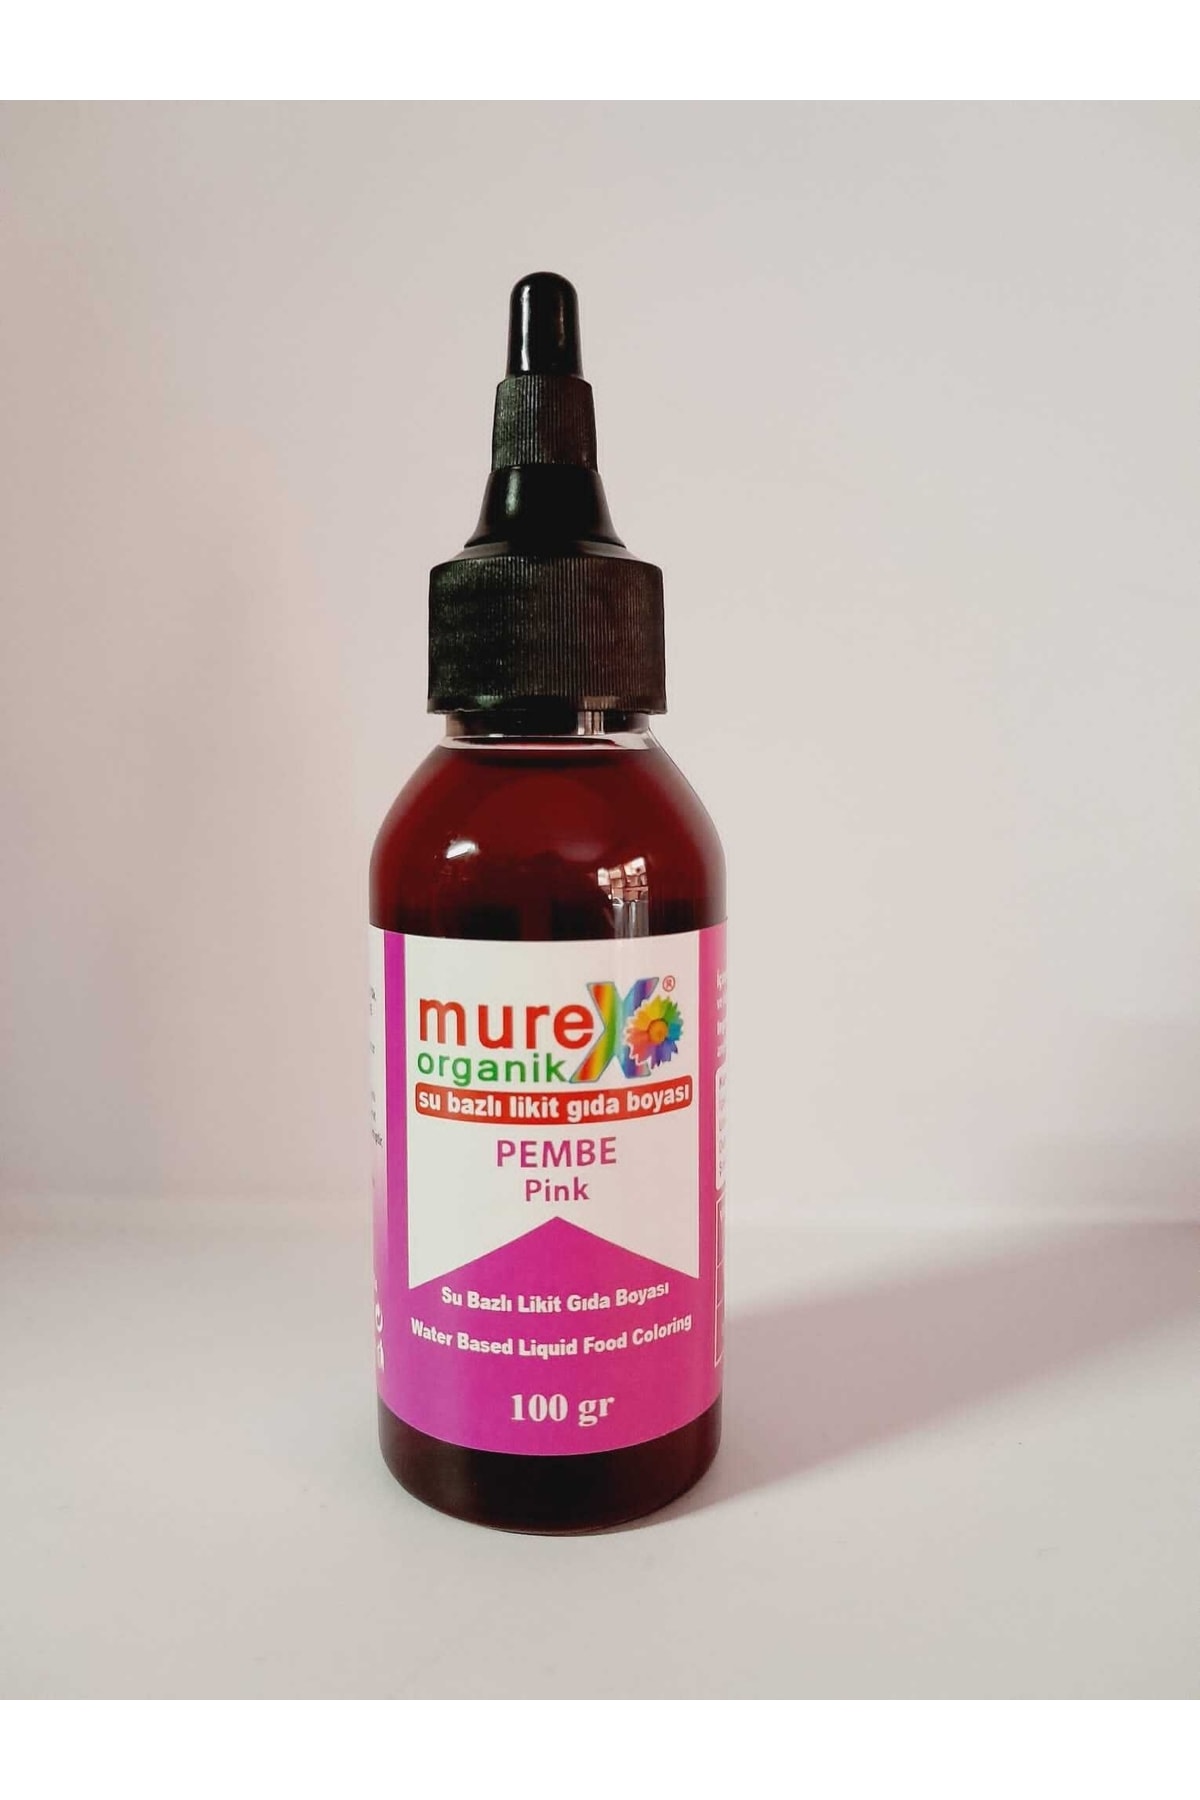 murex Meyvesel Sebzesel.bitkisel Organik Su Bazli Gida Boyası 100gr